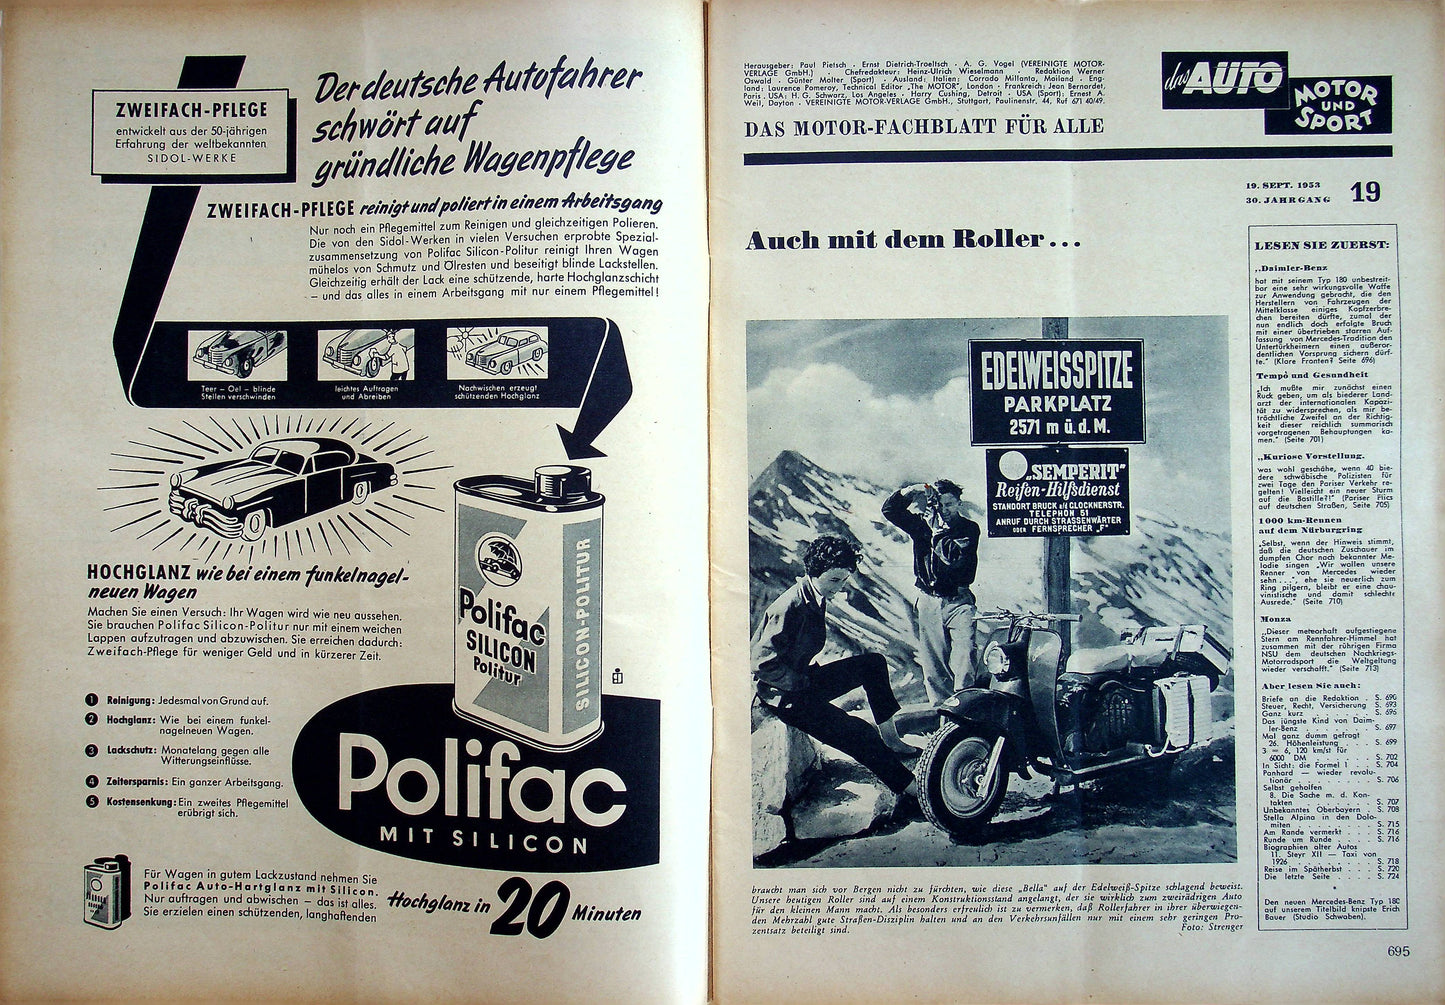 Auto Motor und Sport 19/1953